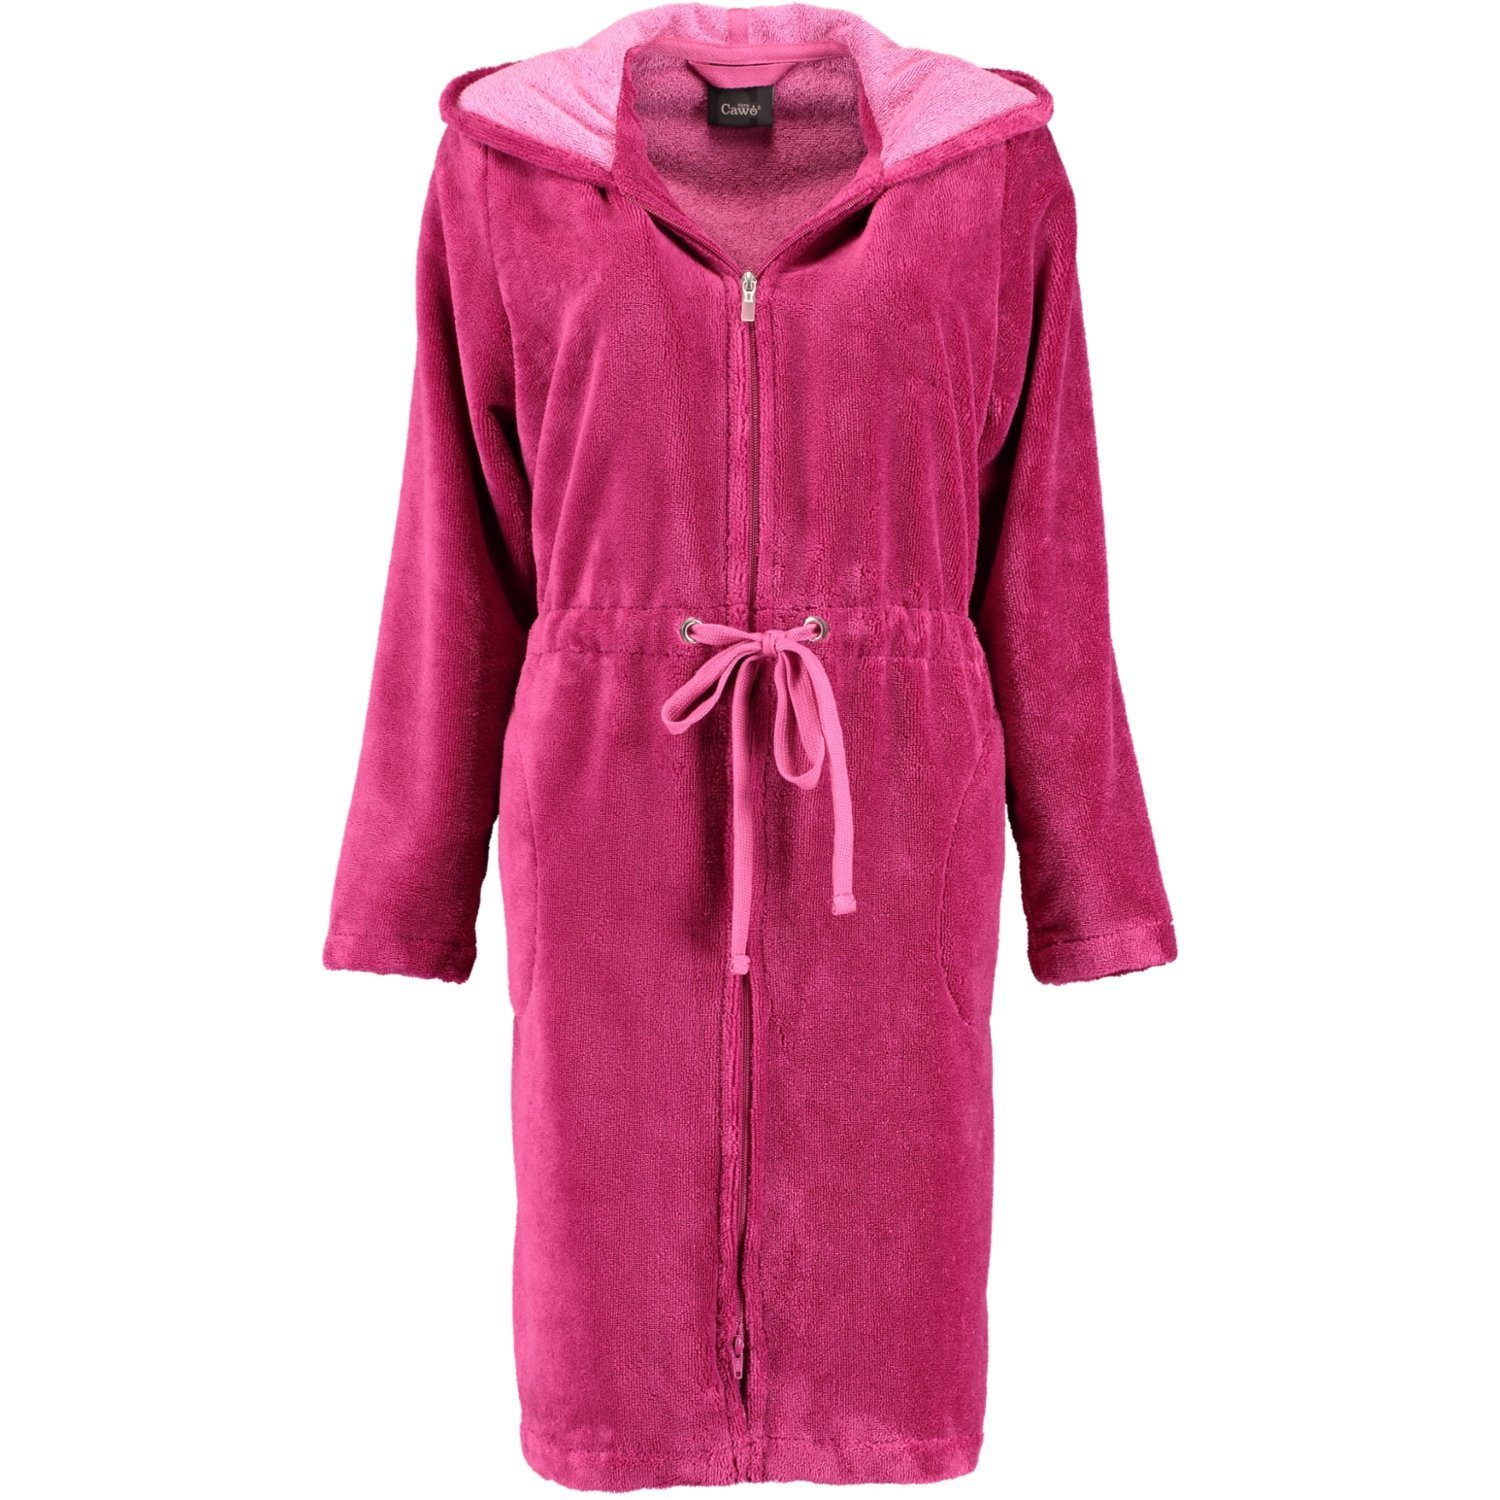 Damenbademantel 22 pink Kurzform, Home Cawö Reißverschluss Reißverschluss, 822, Baumwollmischung, Cawö